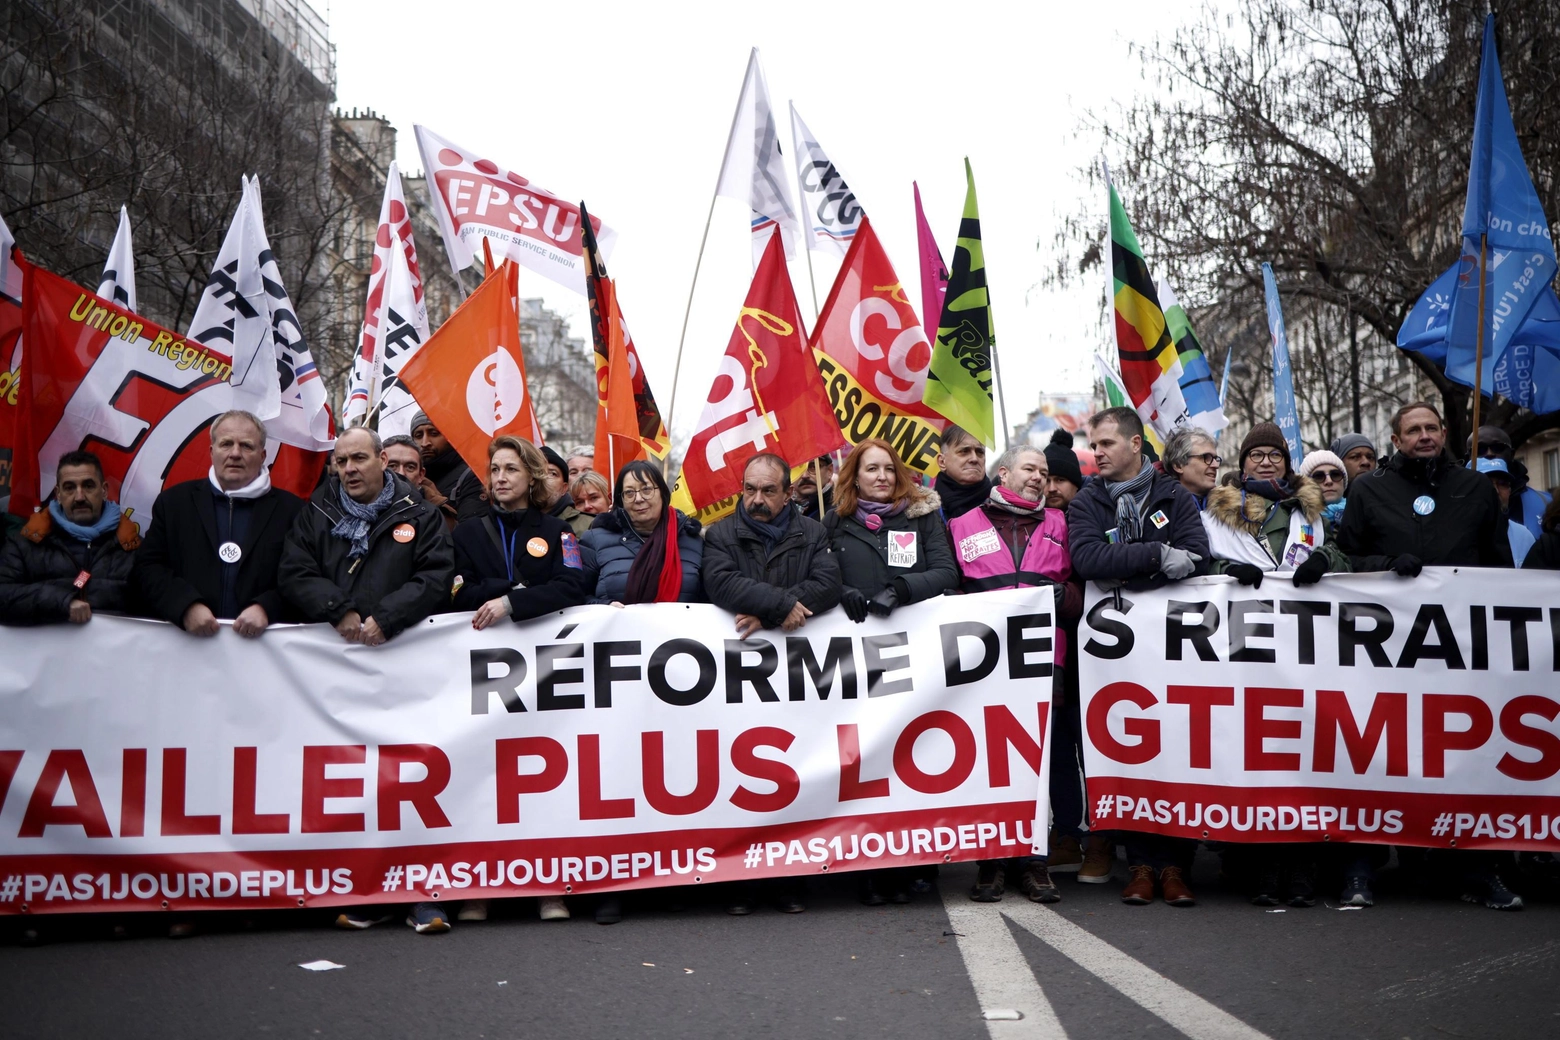 Protesta dei lavoratori contro riforma pensioni, in tutta la Francia